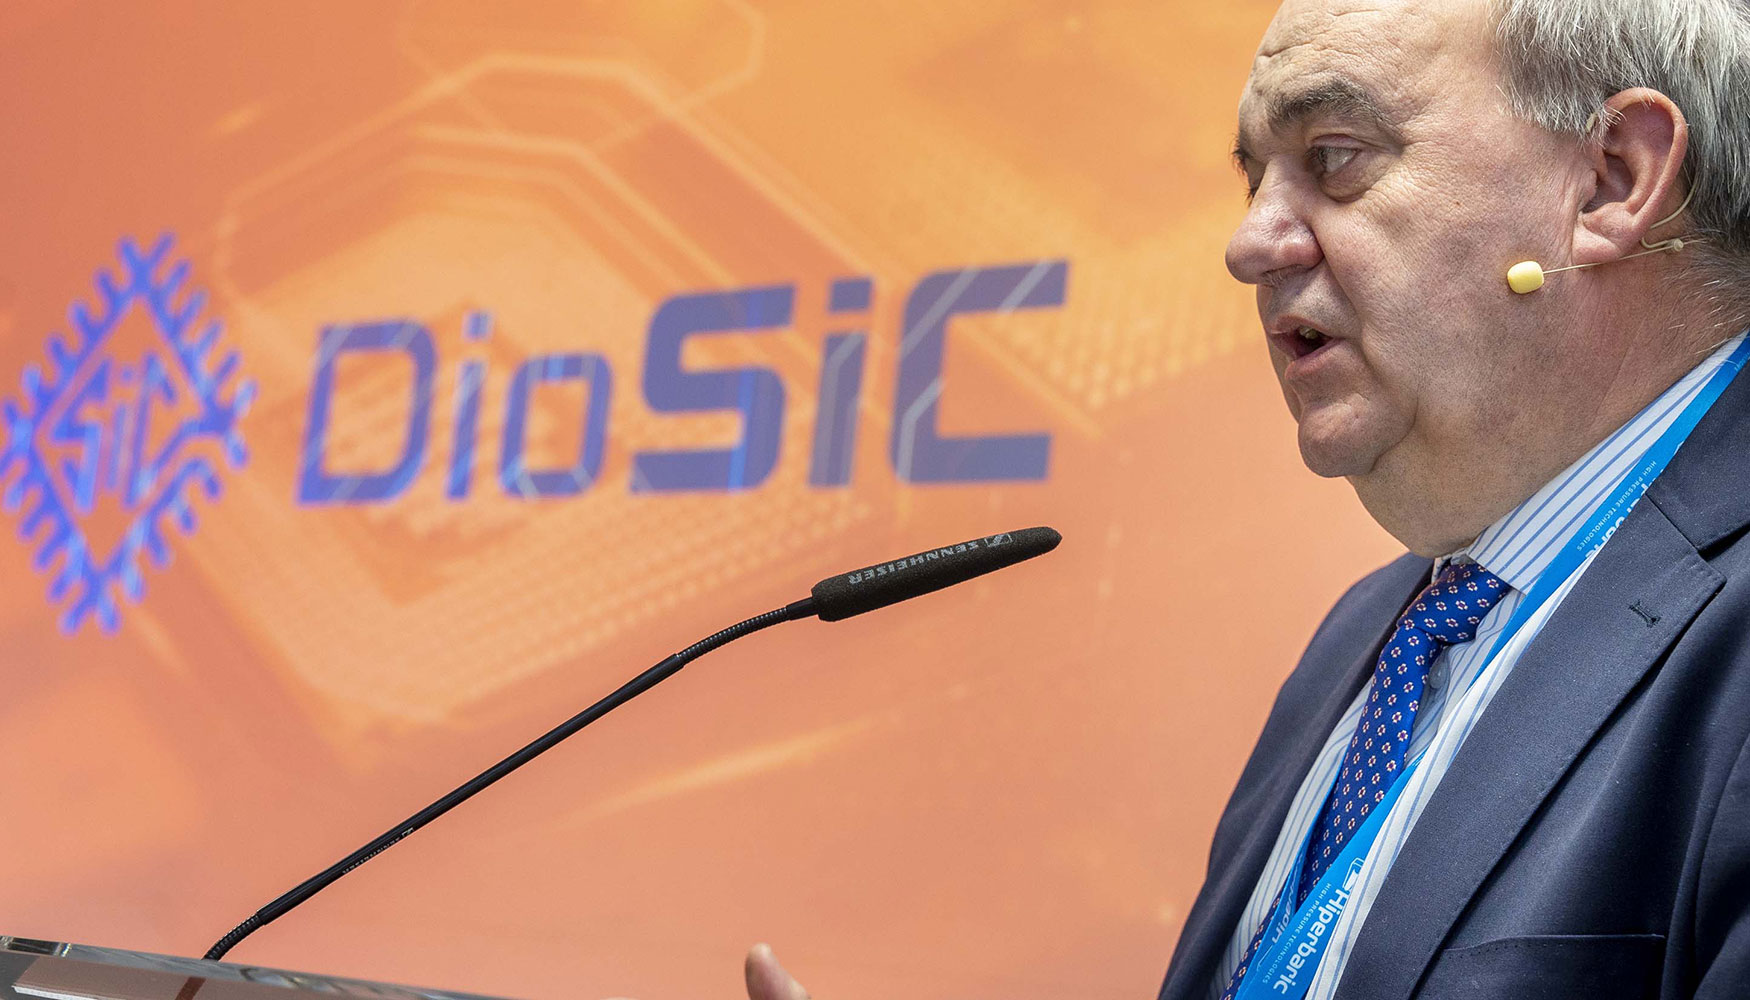 Presentacion del proyecto DioSic para realizar semiconductores de nueva generacion 100% espaoles